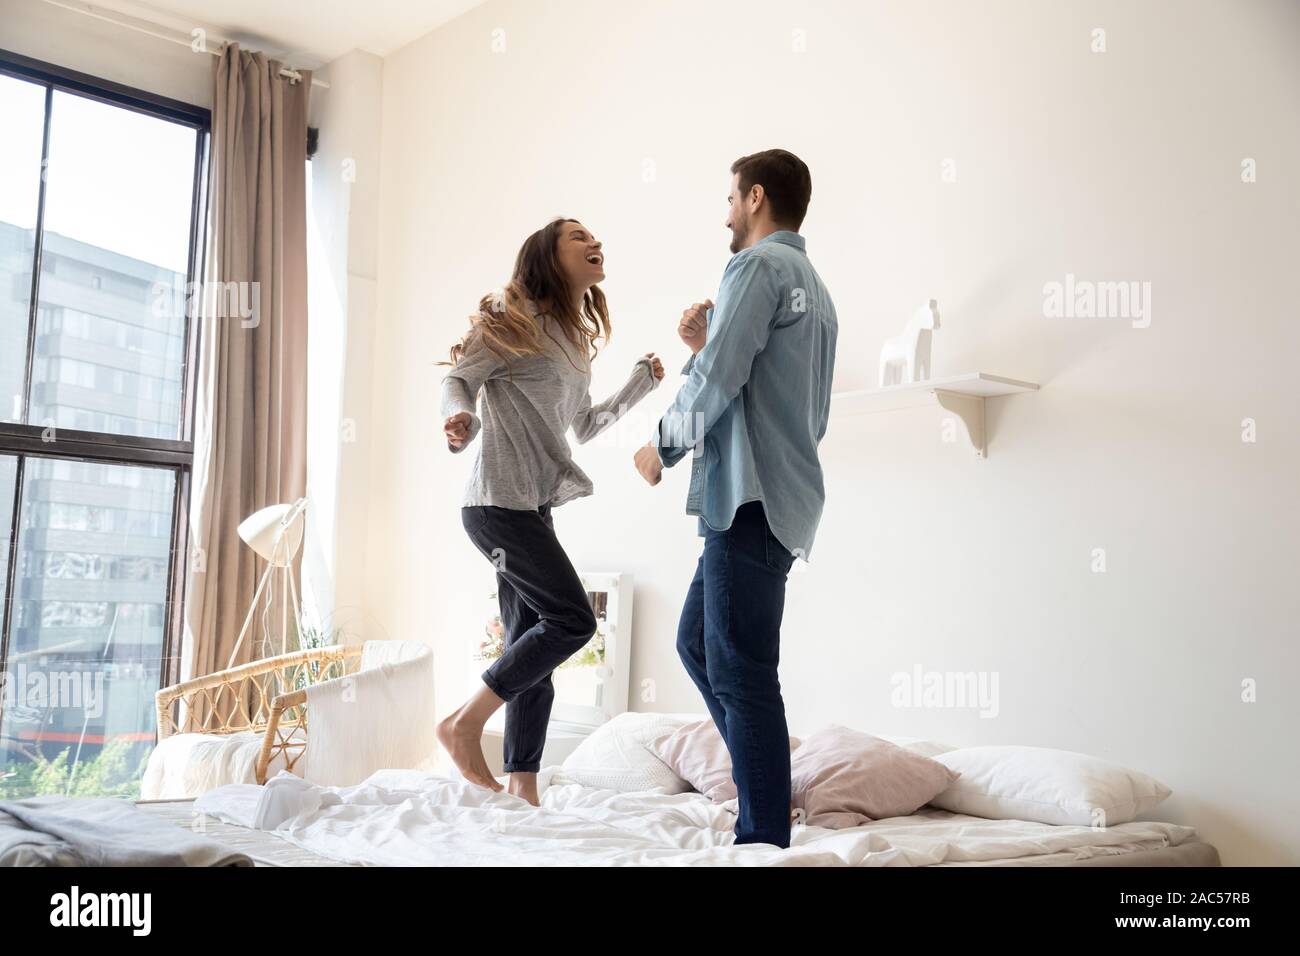 Felice spensierato coppia giovane ridere ballando sul letto insieme Foto Stock